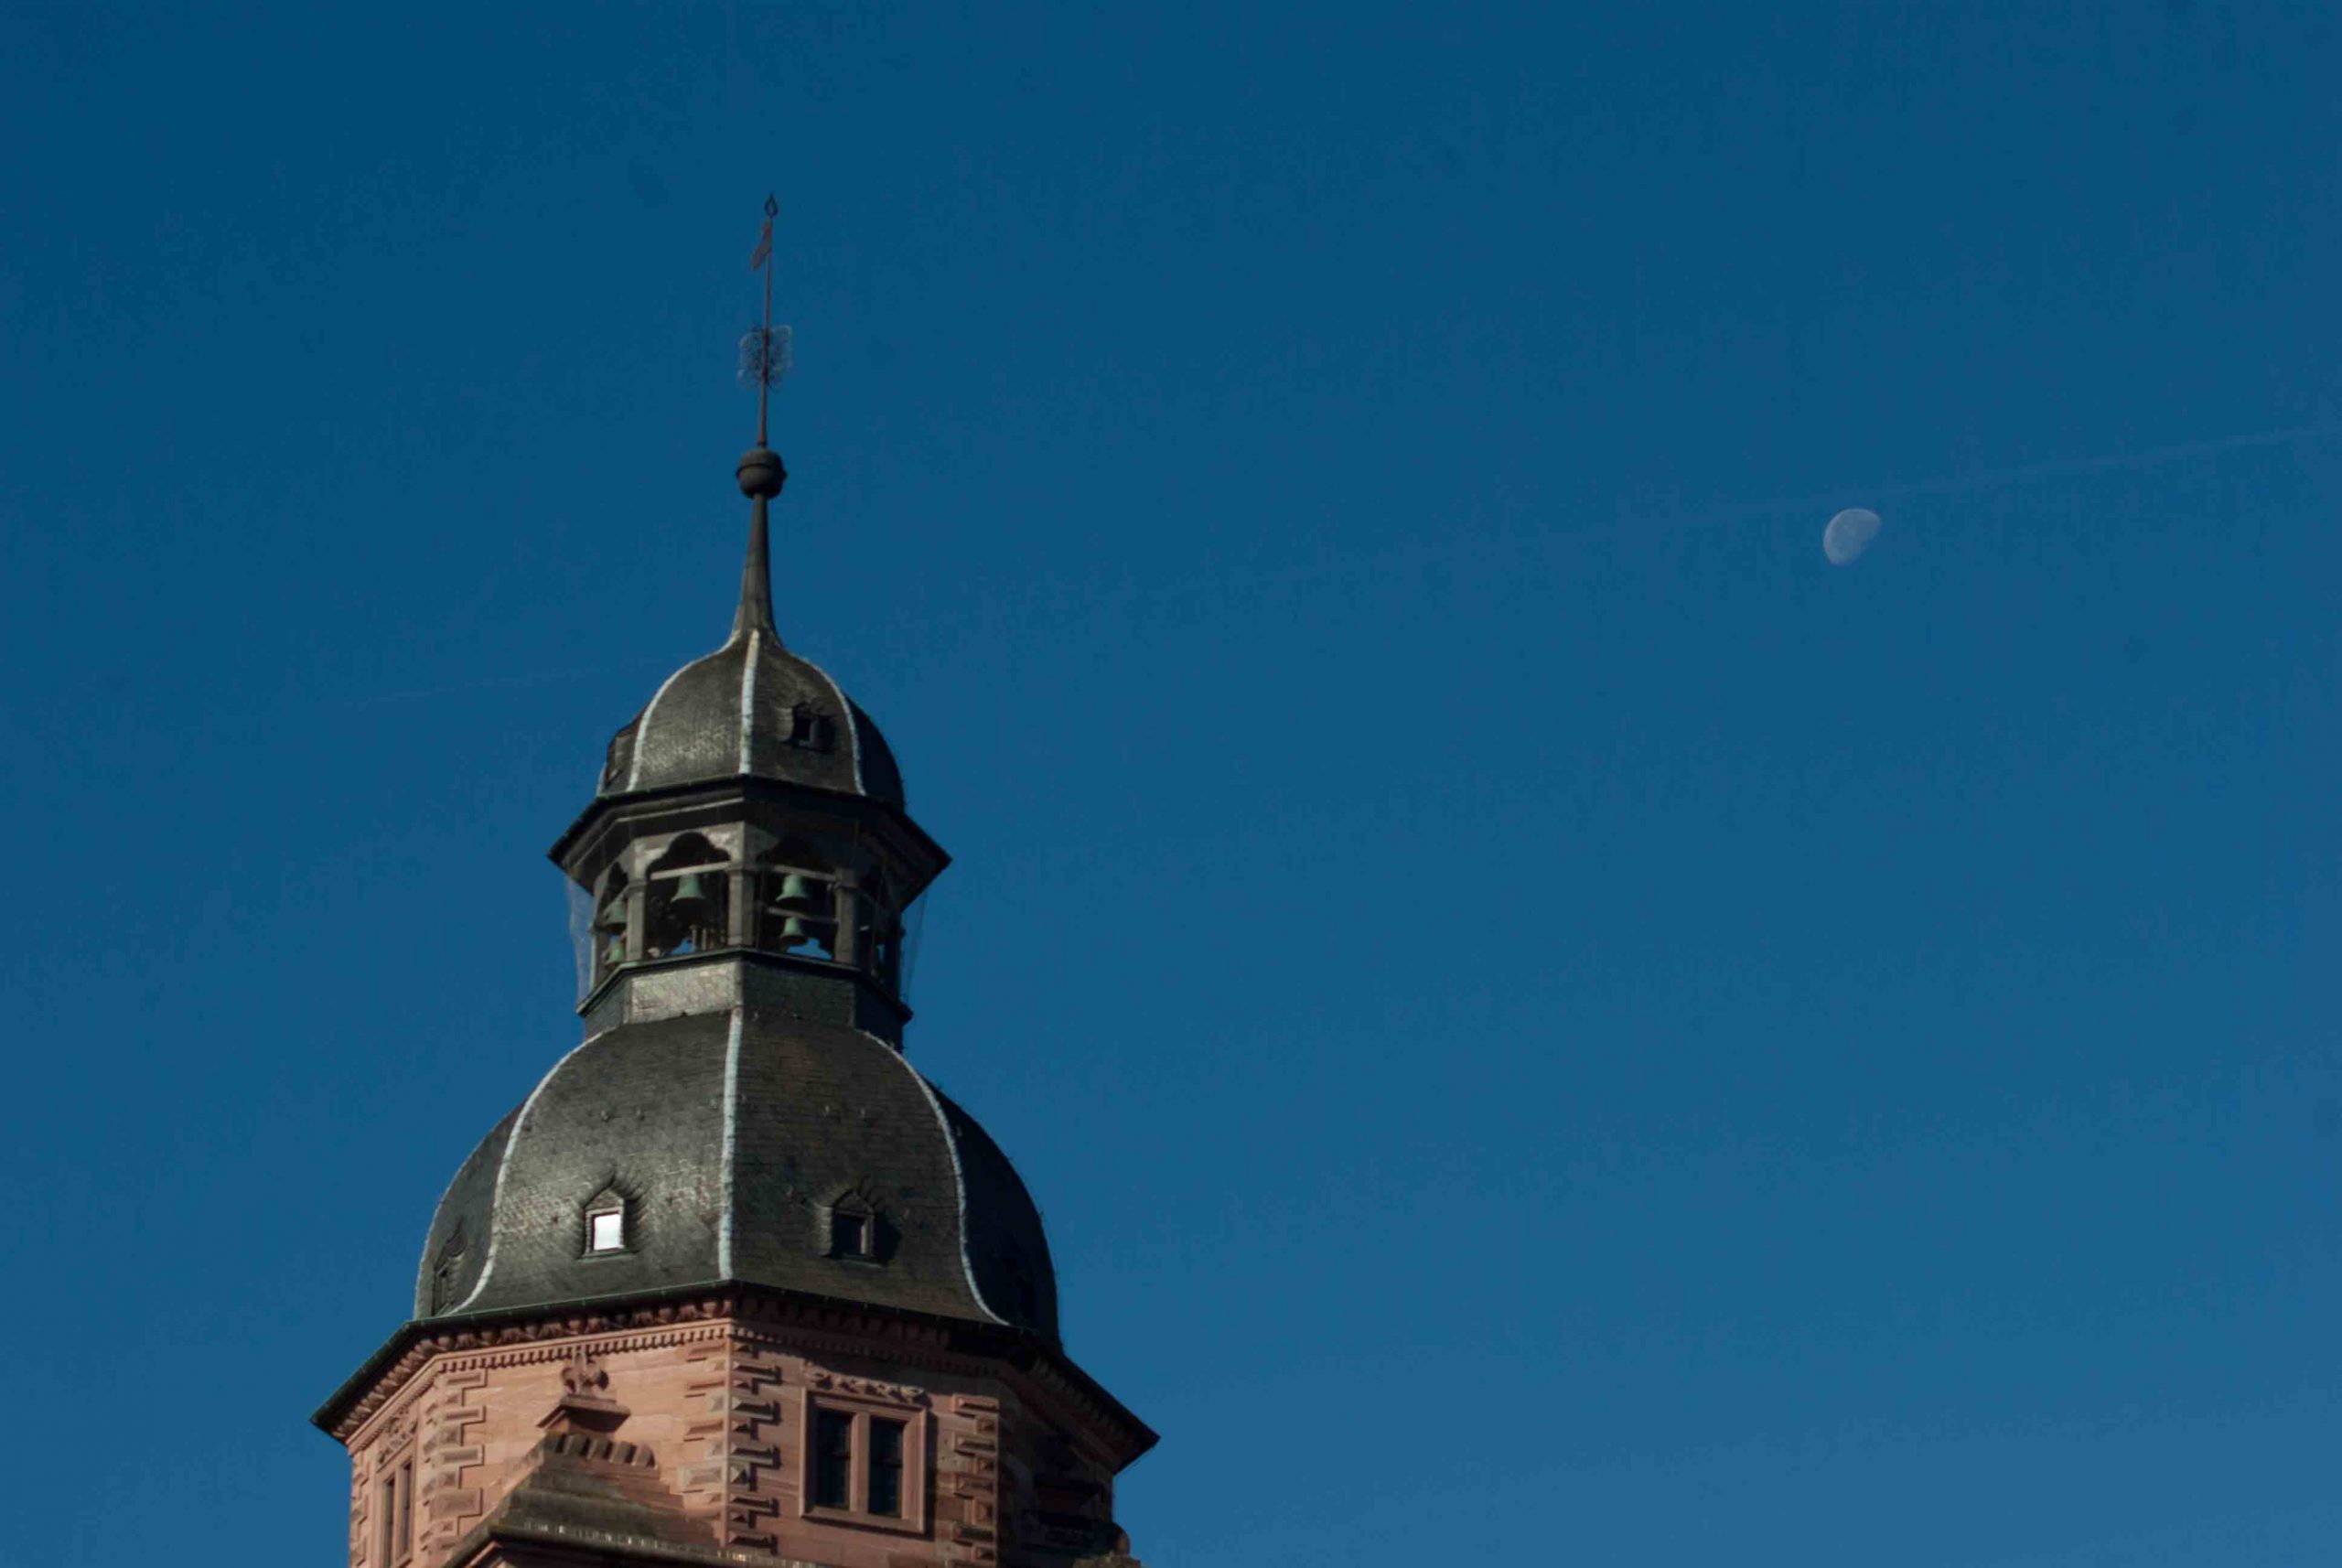 Ökomarkt Aschaffenburg Bild des Schlossturms bei strahlendblauem Himmel